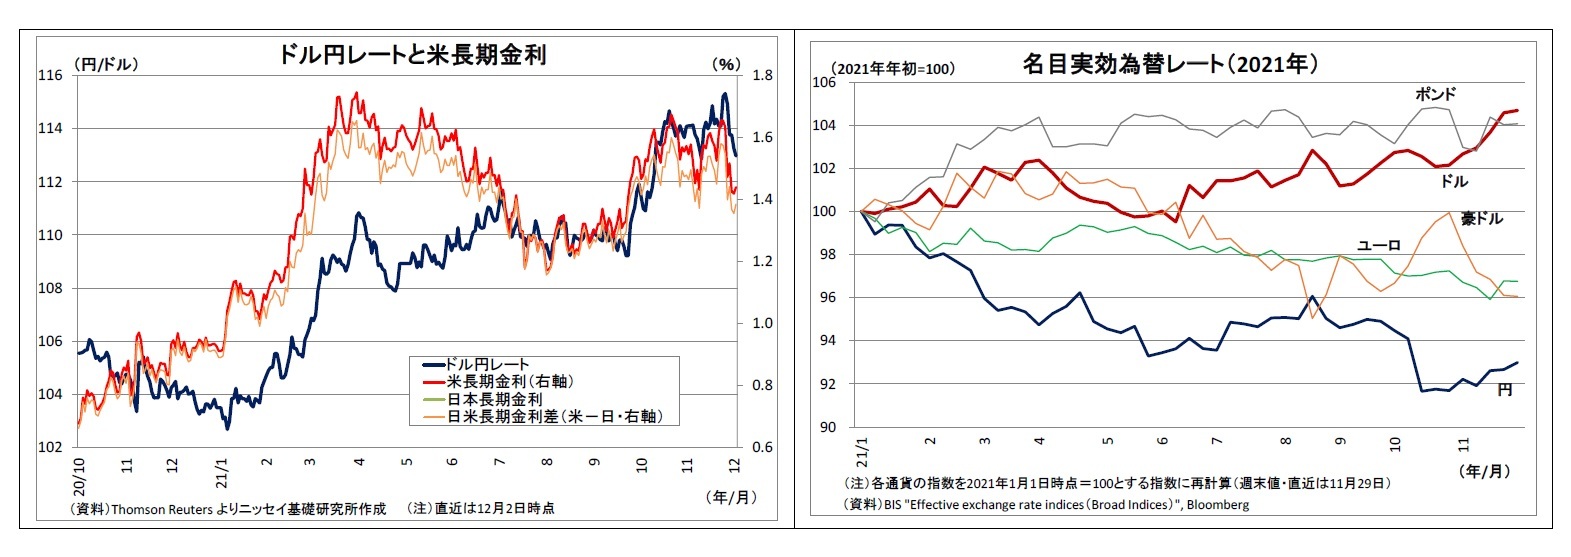 ドル円レートと米長期金利/名目実効為替レート（2021年）